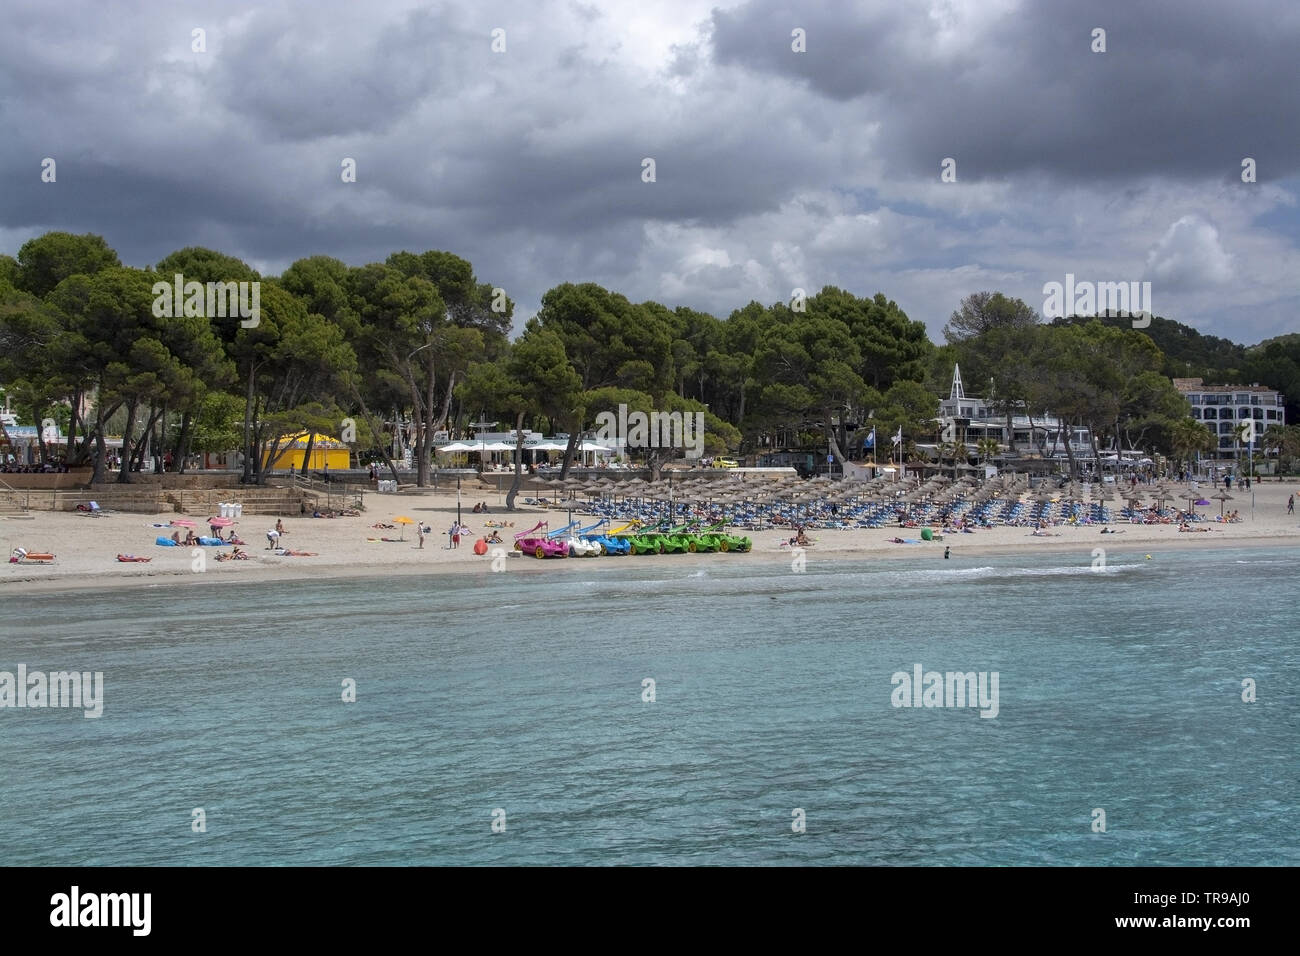 PAGUERA, MALLORCA, SPANIEN - 29. MAI 2019: Frühling Strand mit Liegestühlen und Spielzeug Boote am 29. Mai 2019 in Paguera, Mallorca, Spanien. Stockfoto